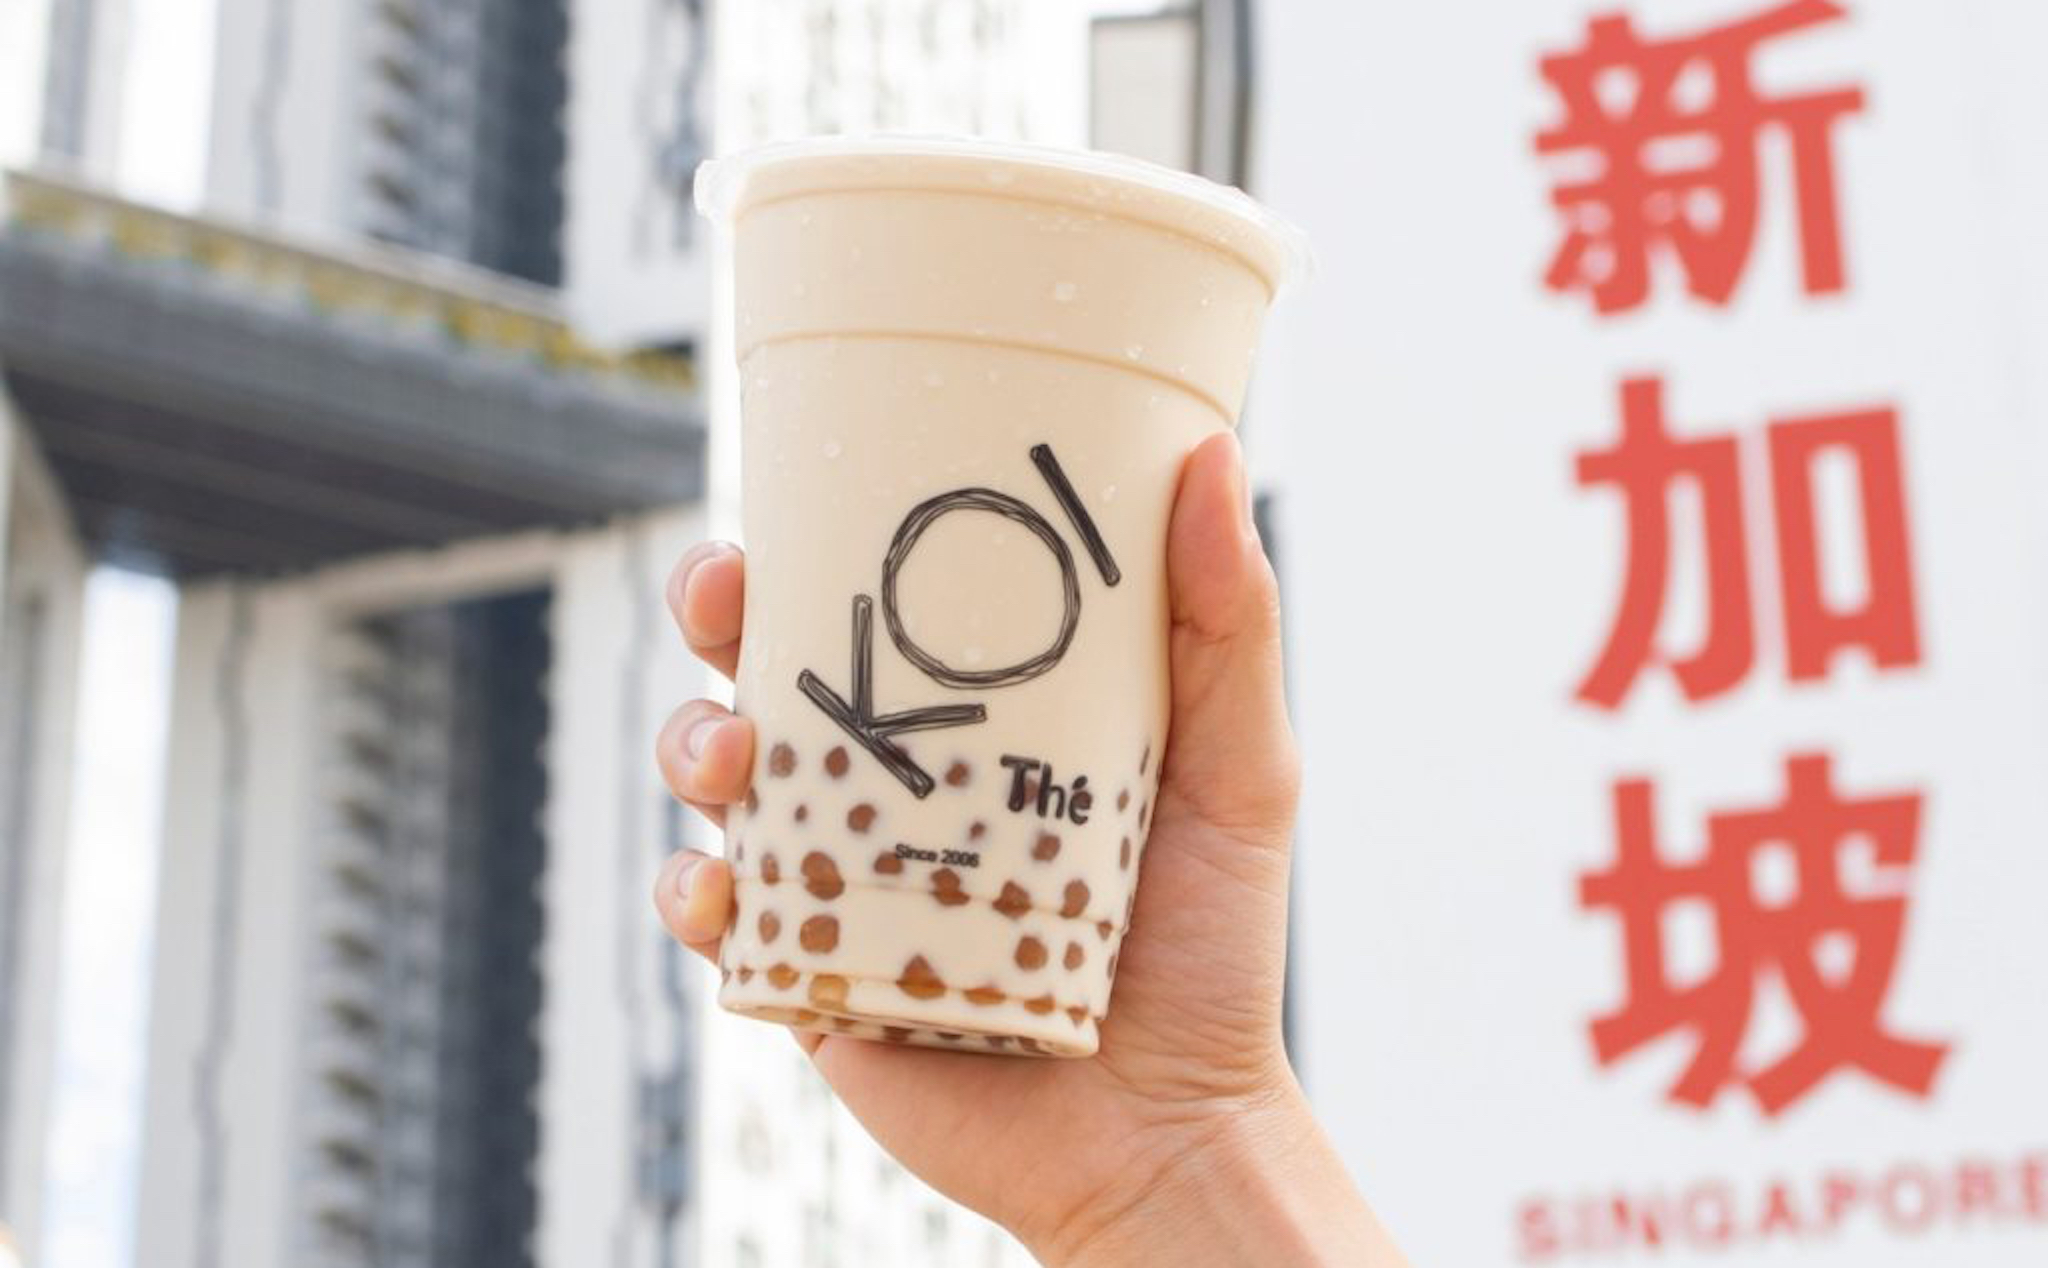 Singapore muốn giảm cửa hàng trà sữa, hướng người dân đến một lối sống lành mạnh hơn